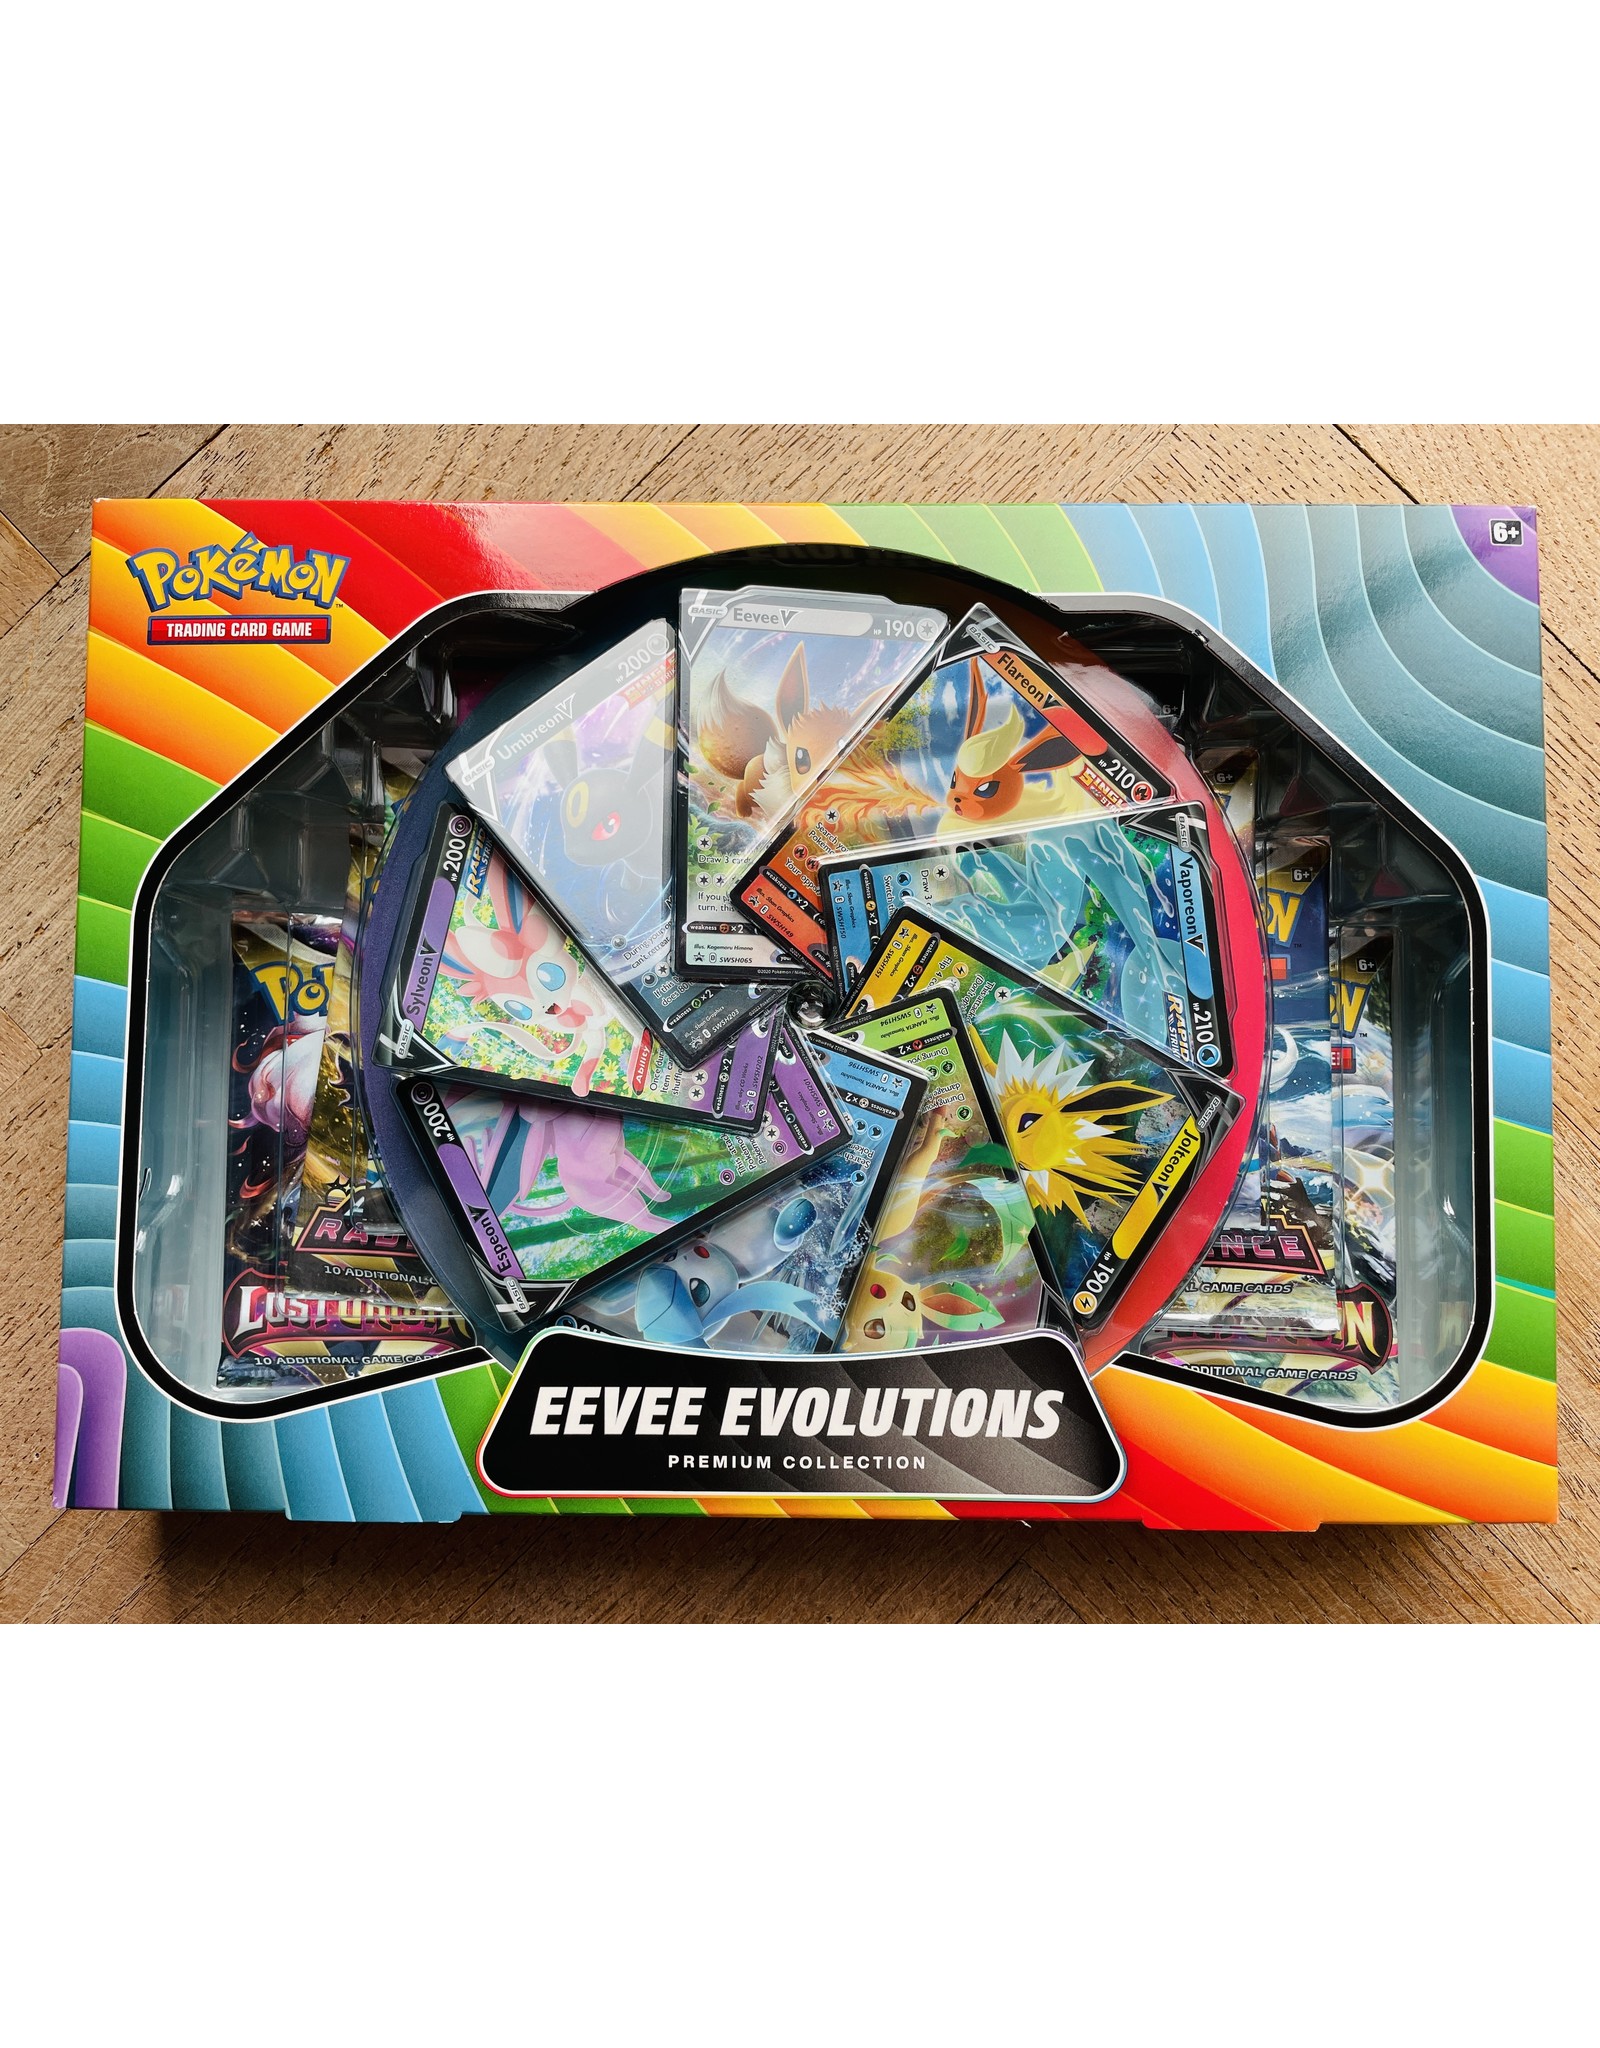 Eevee Evolutions Pokemon Premium Collection